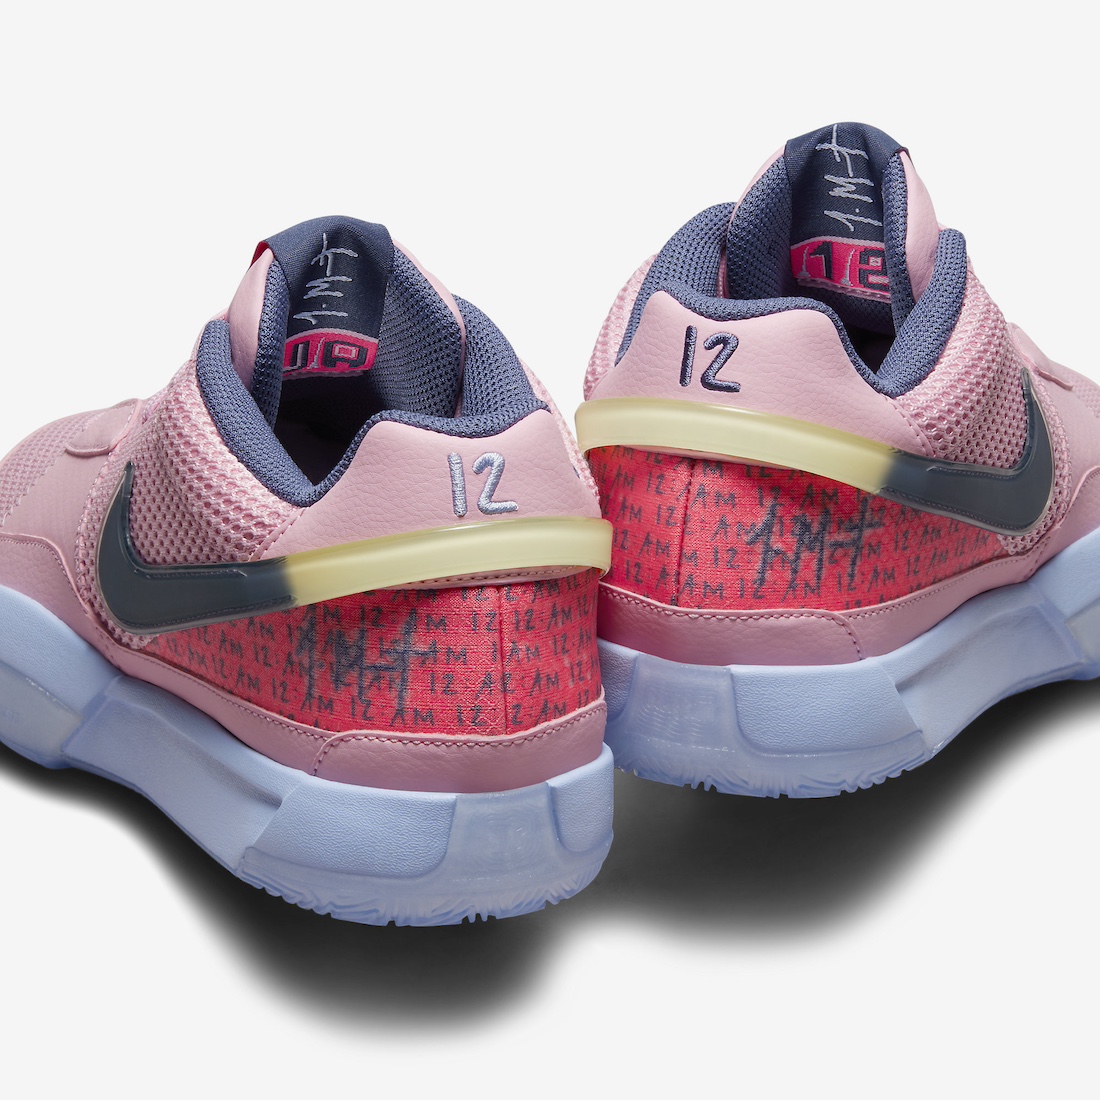 Nike-Ja-1-PE-Autograph-Medium-Soft-Pink-FV1281-600-9.jpg